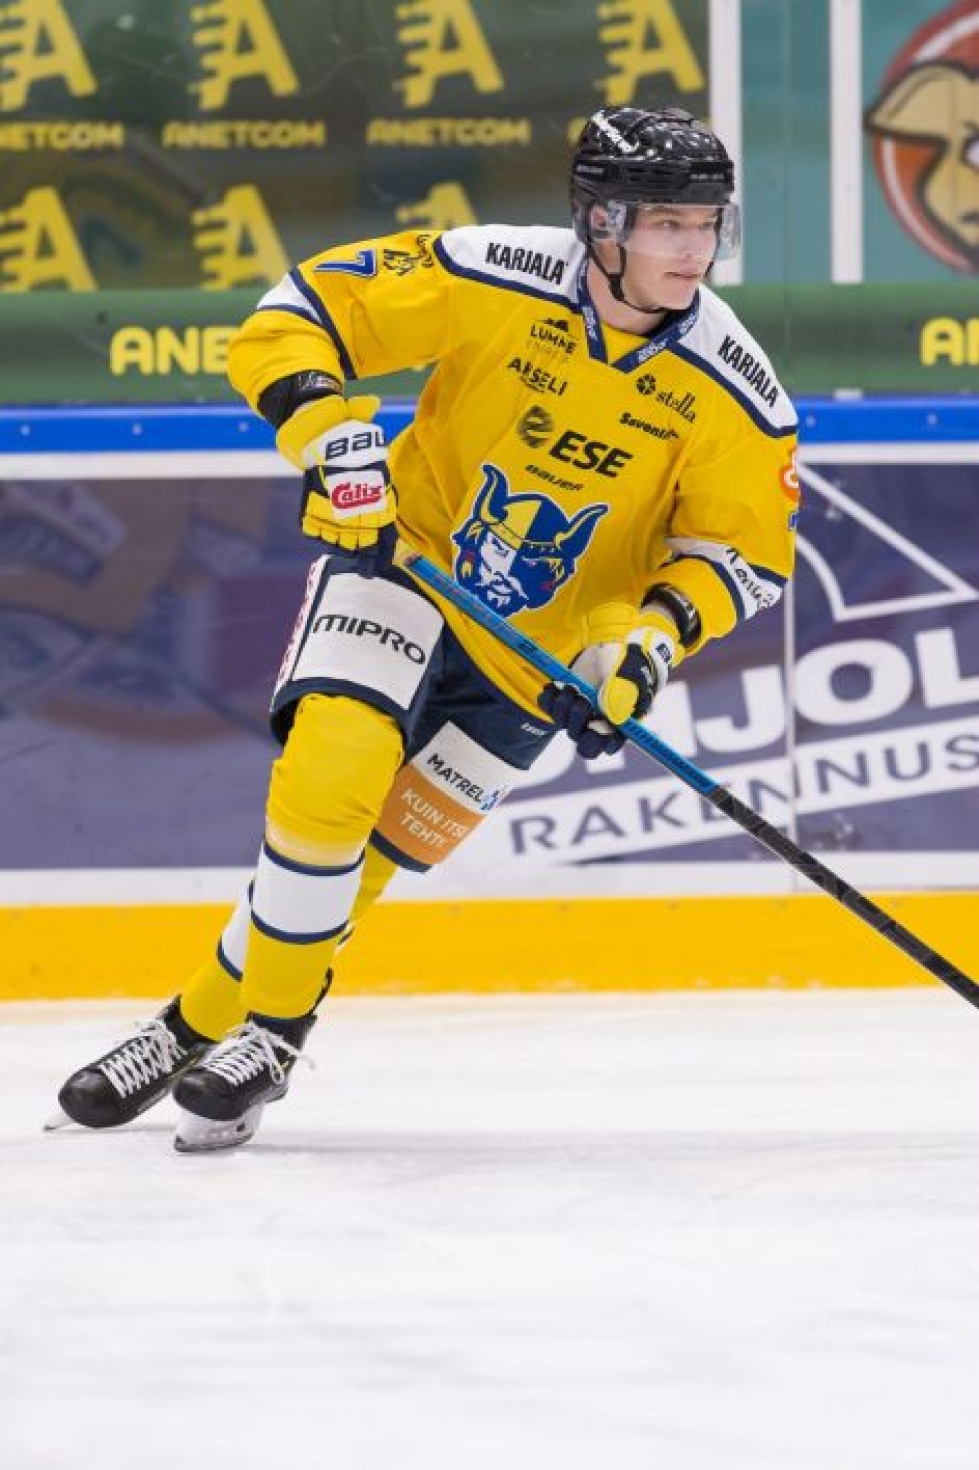 Etelä-Vantaan Urheilijoiden kasvatti Piipponen, 28, on Jukurien puolustajien kauden pistepörssissä neljäs. LEHTIKUVA / MIKA KYLMÄNIEMI